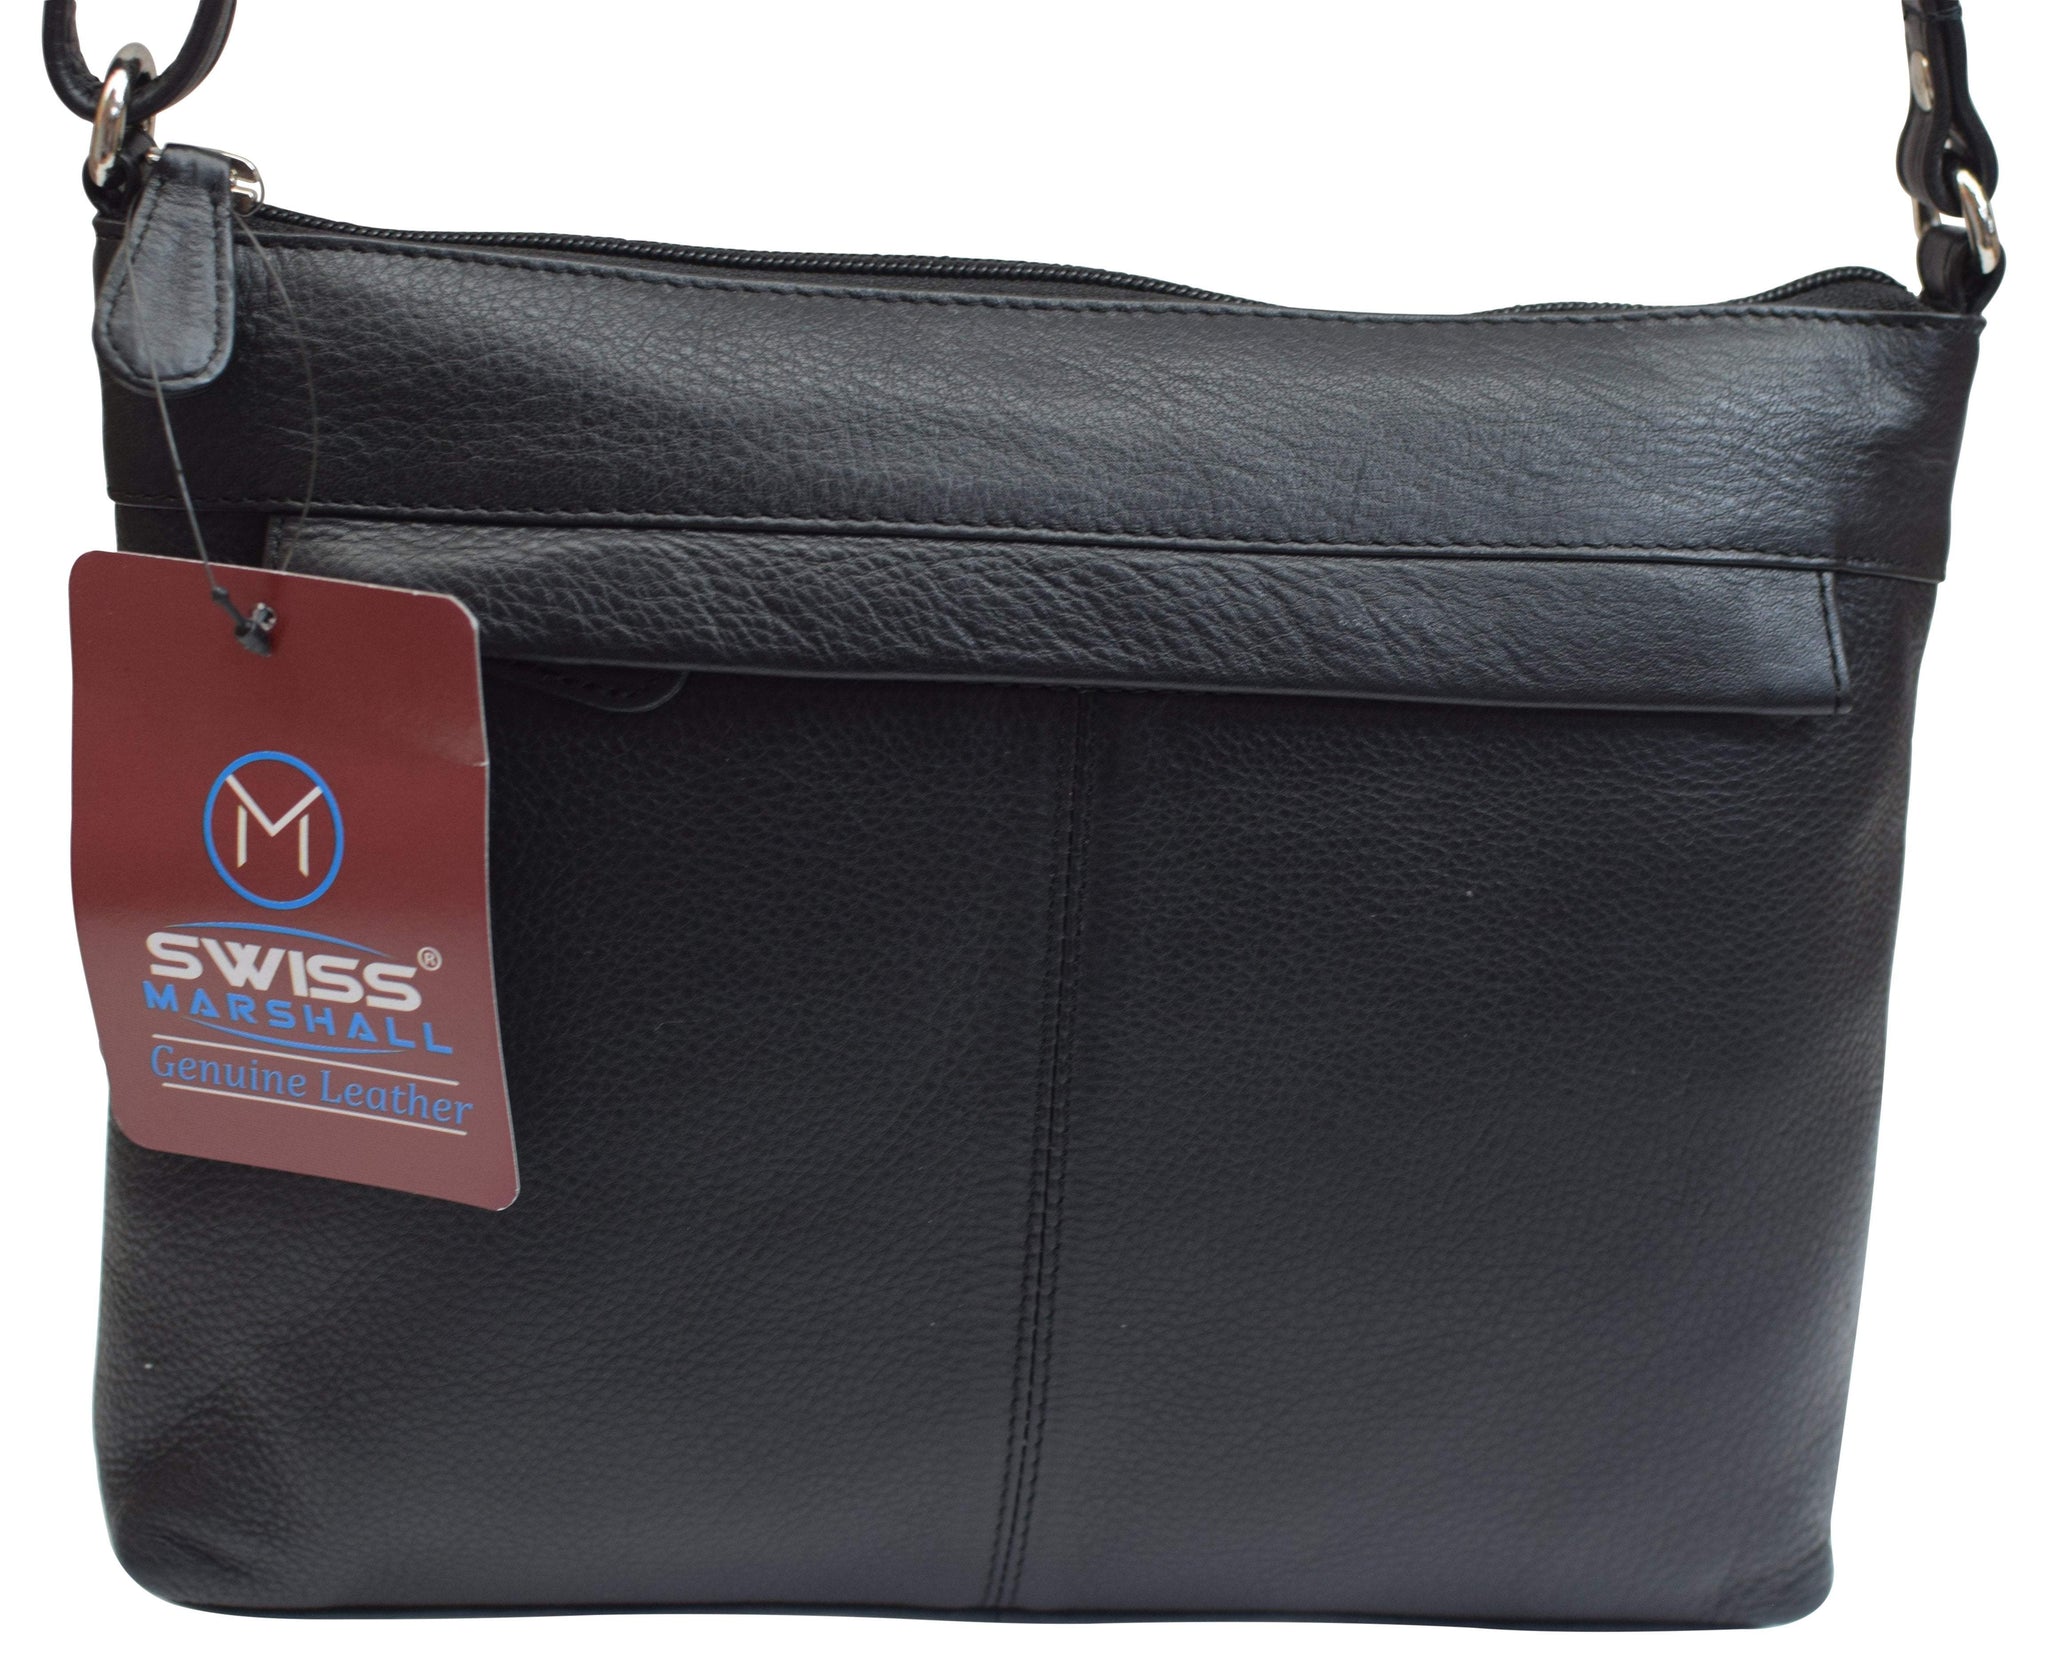 Designer Handbags Purses High Quality Messenger Bags Women Genuine